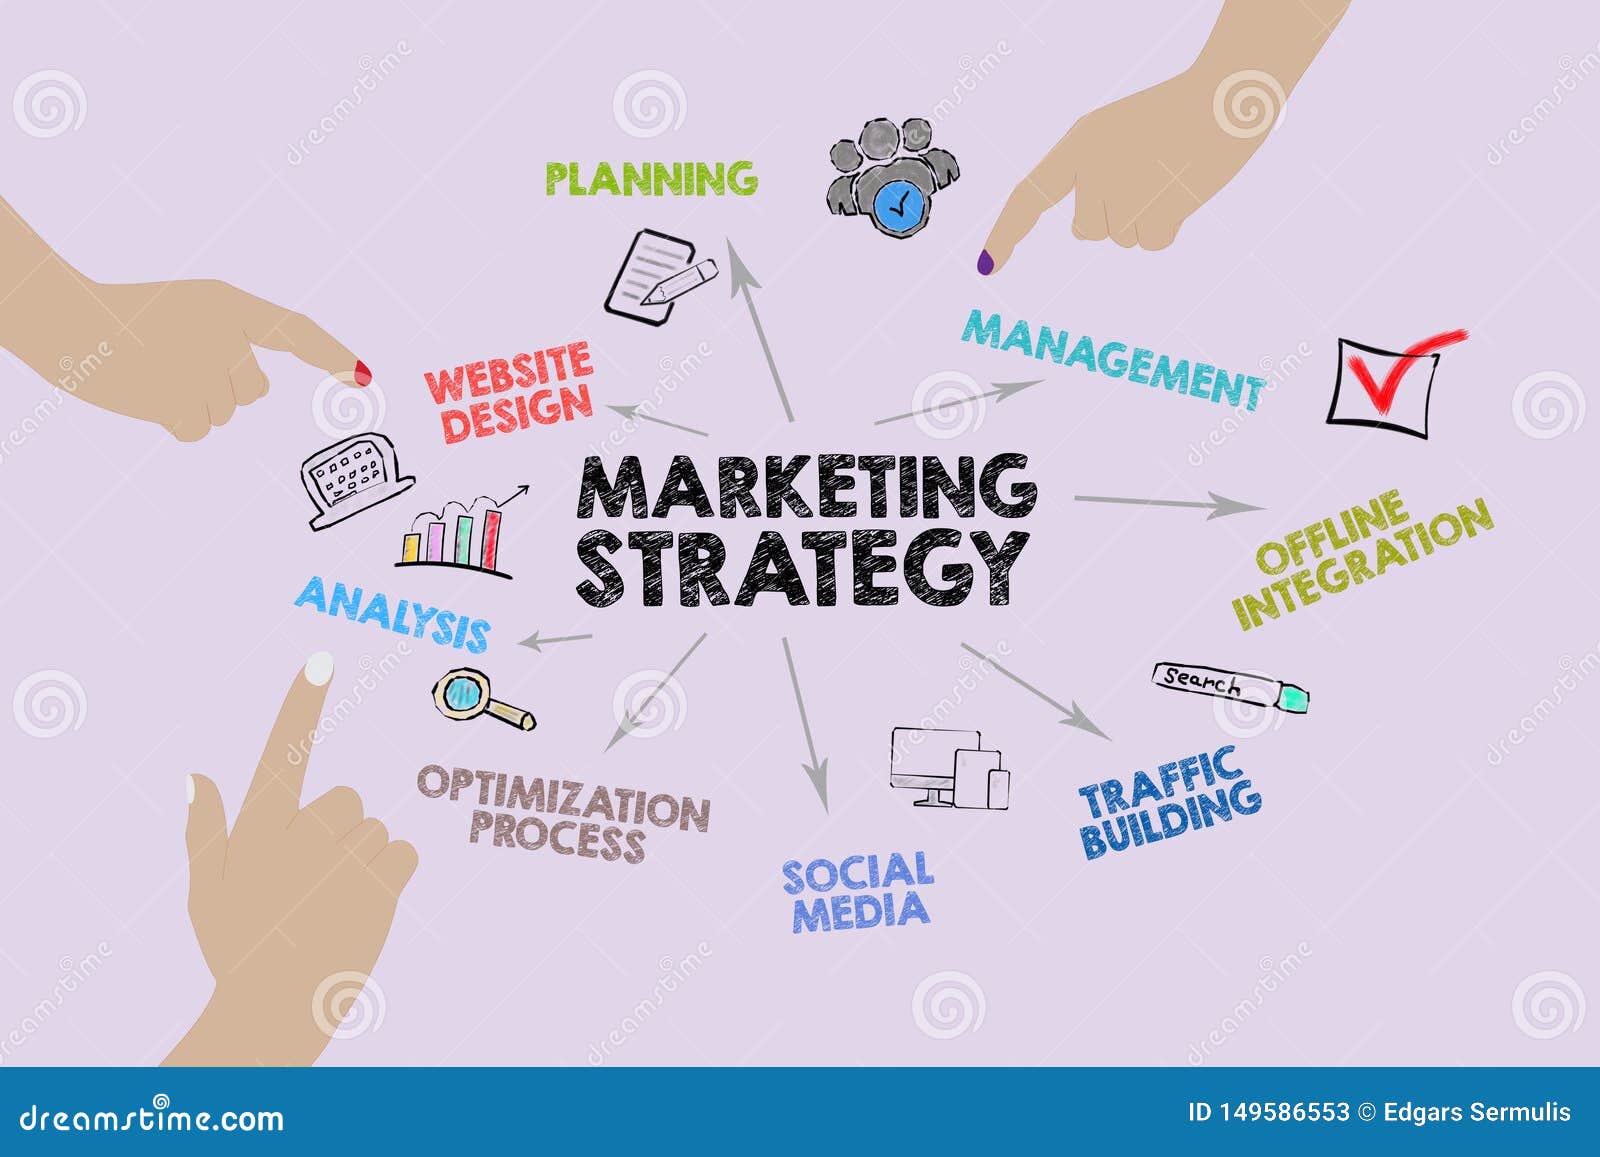 Marketing Strategy Chart